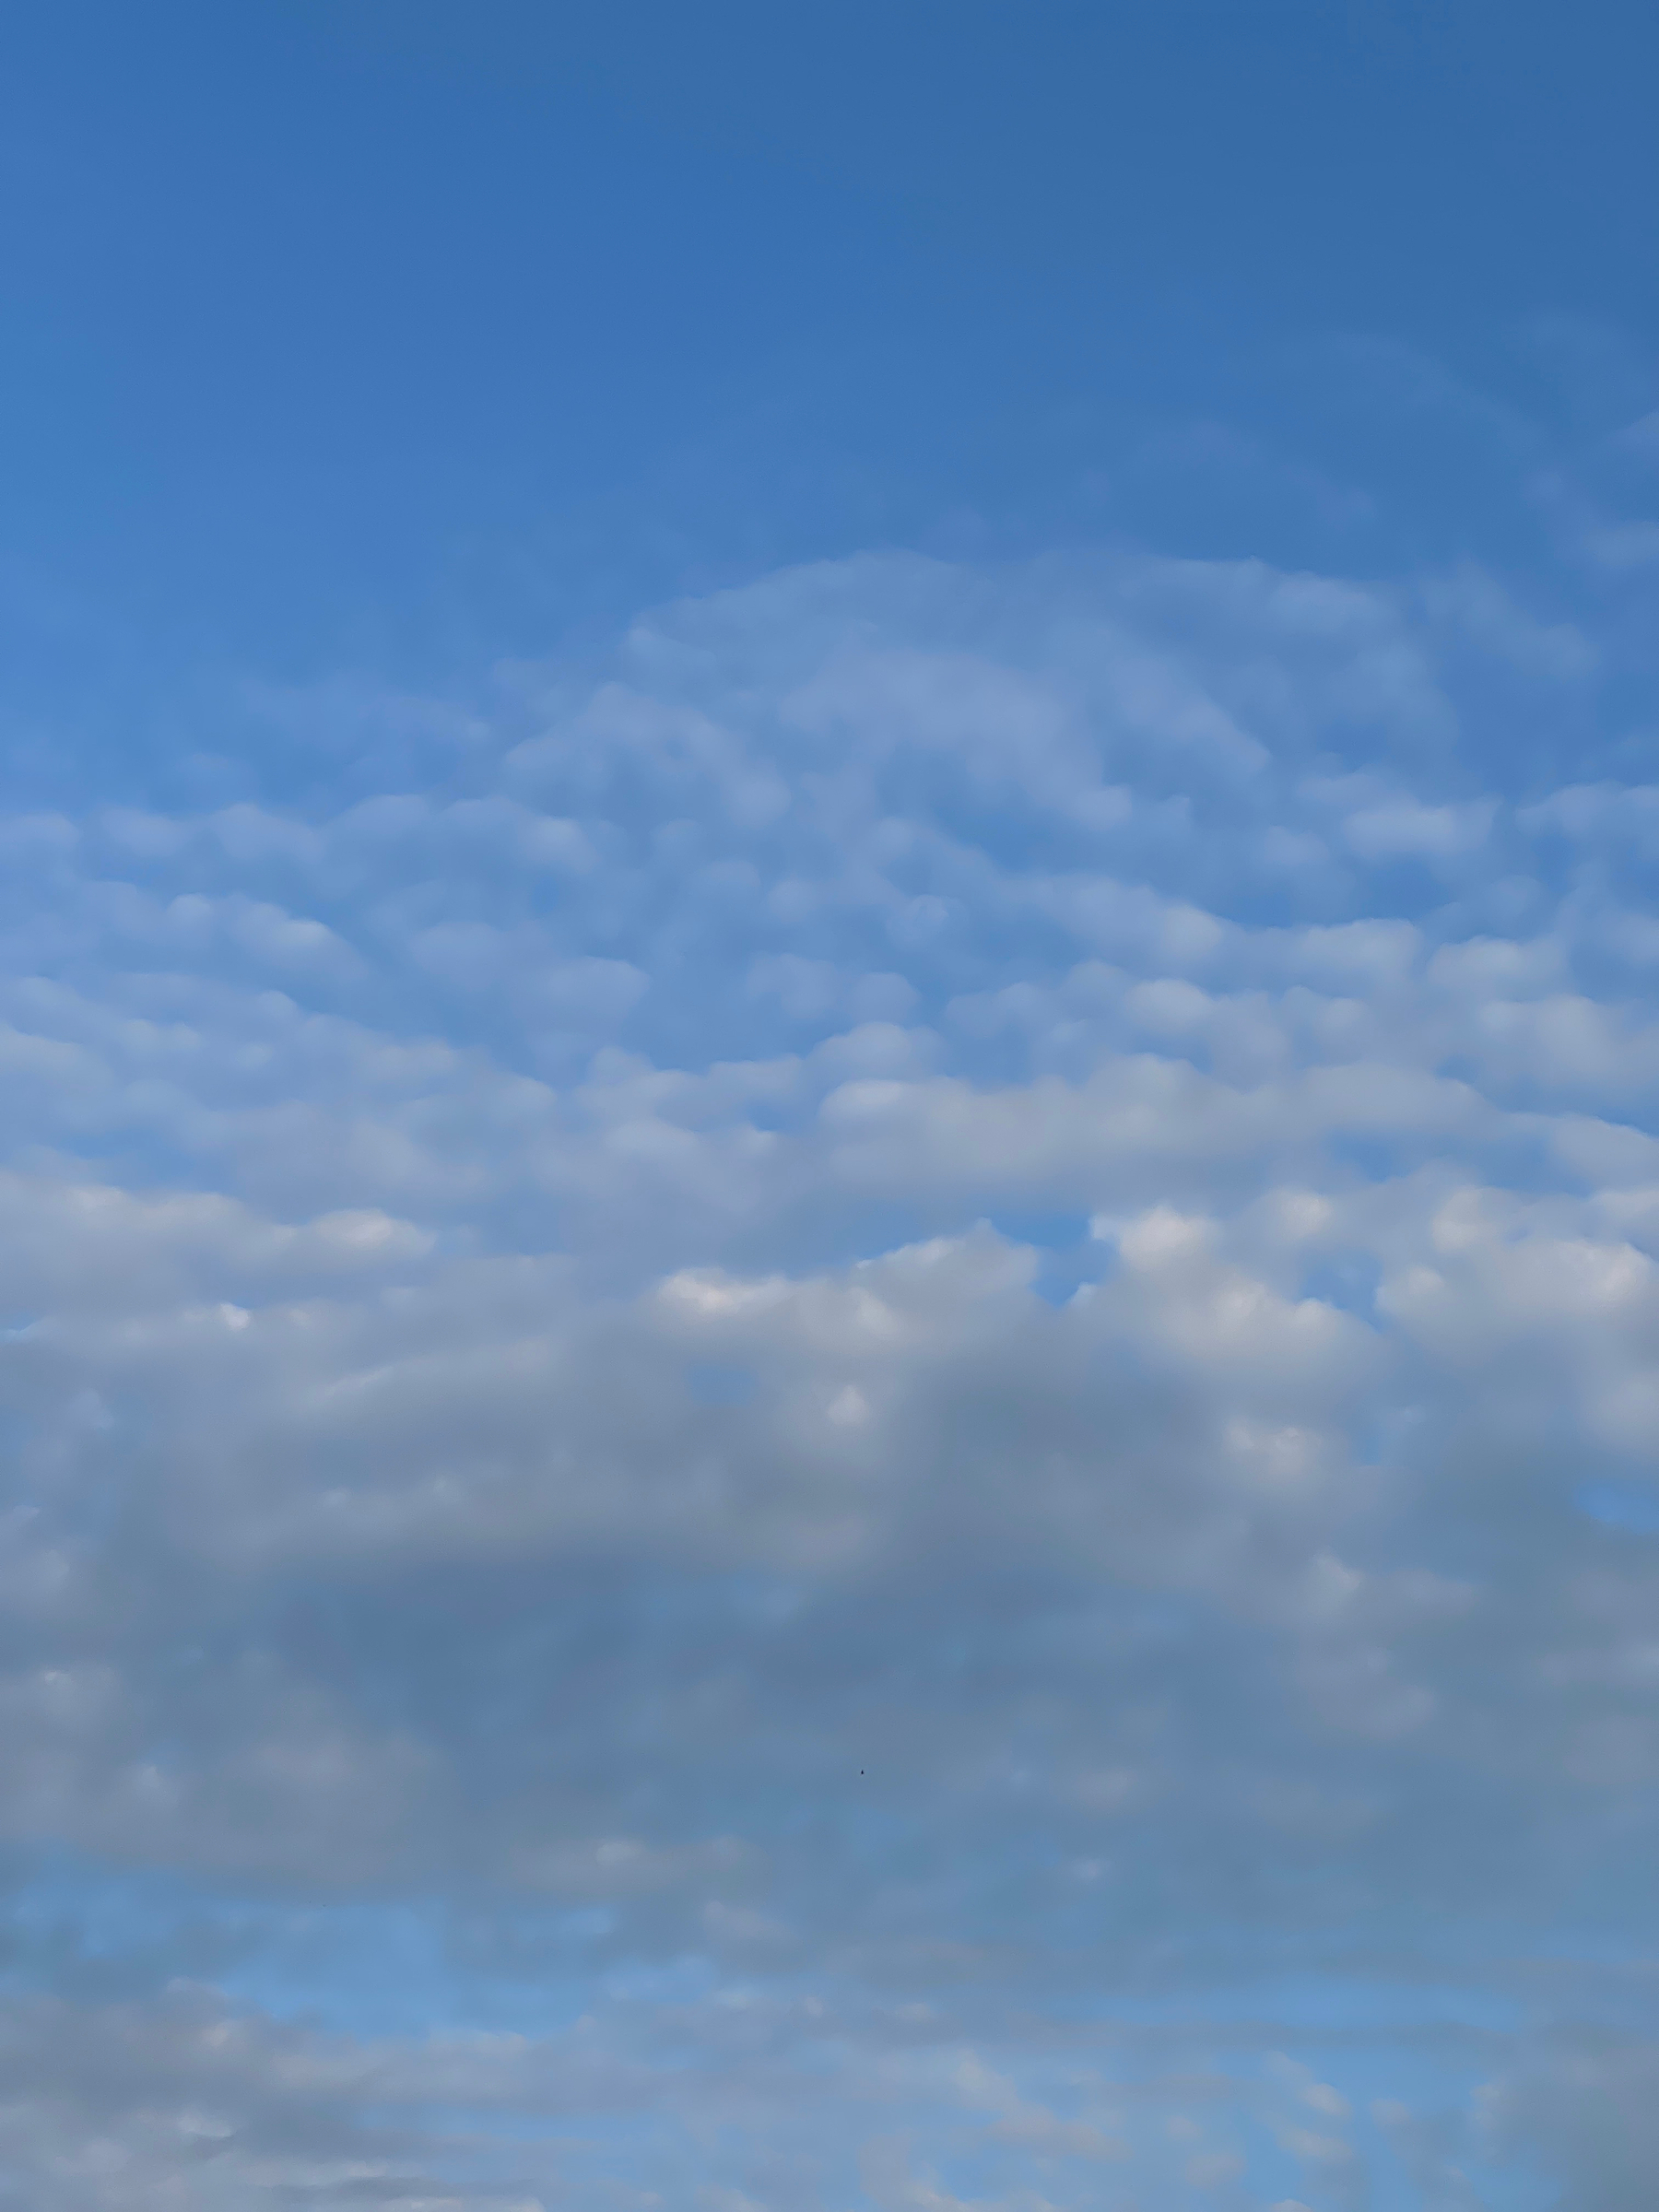 White mackerel clouds in a blue sky.